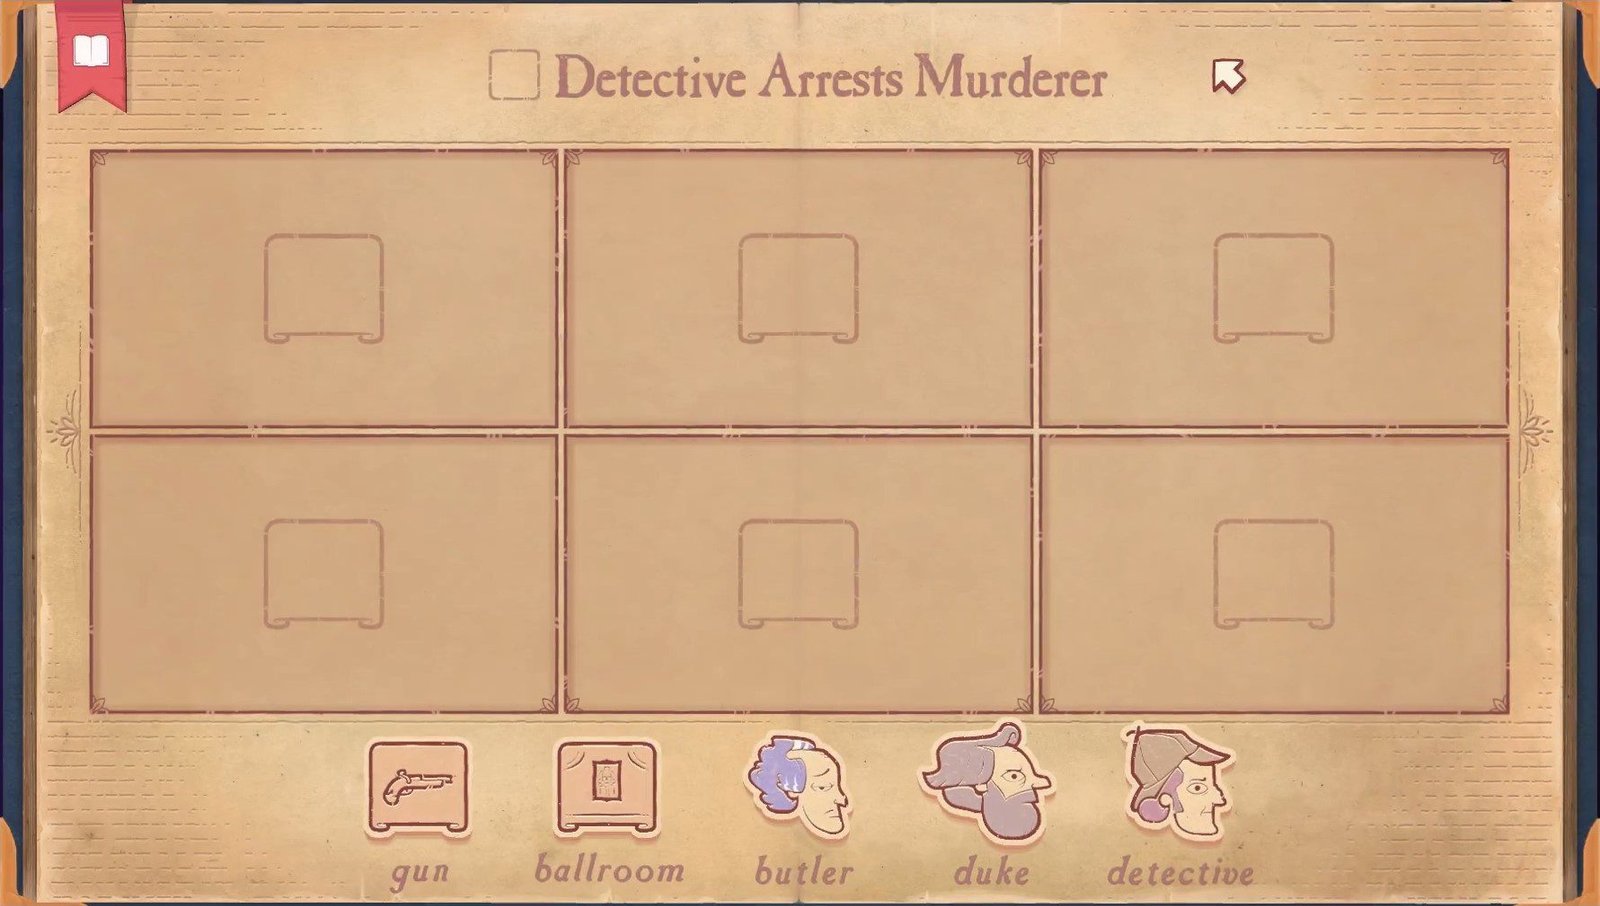 Storyteller - Detective Arrests Murderer